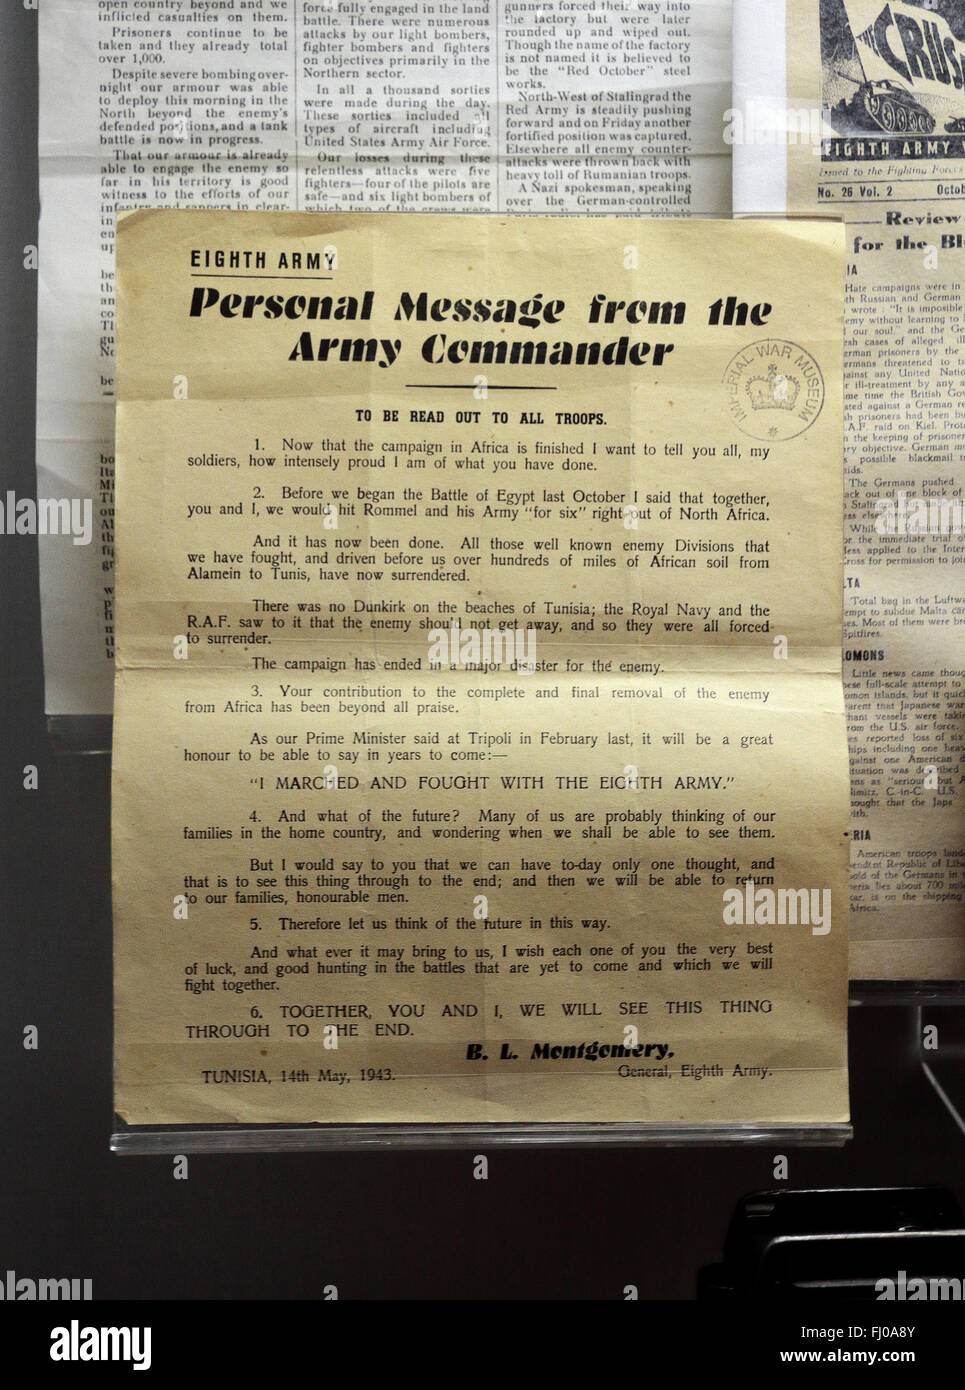 Nota Dal Gen Montgomery per l'Ottava Armata (Maggio 1943) e Imperial War Museum North, Salford Quays, Manchester, Regno Unito. Foto Stock